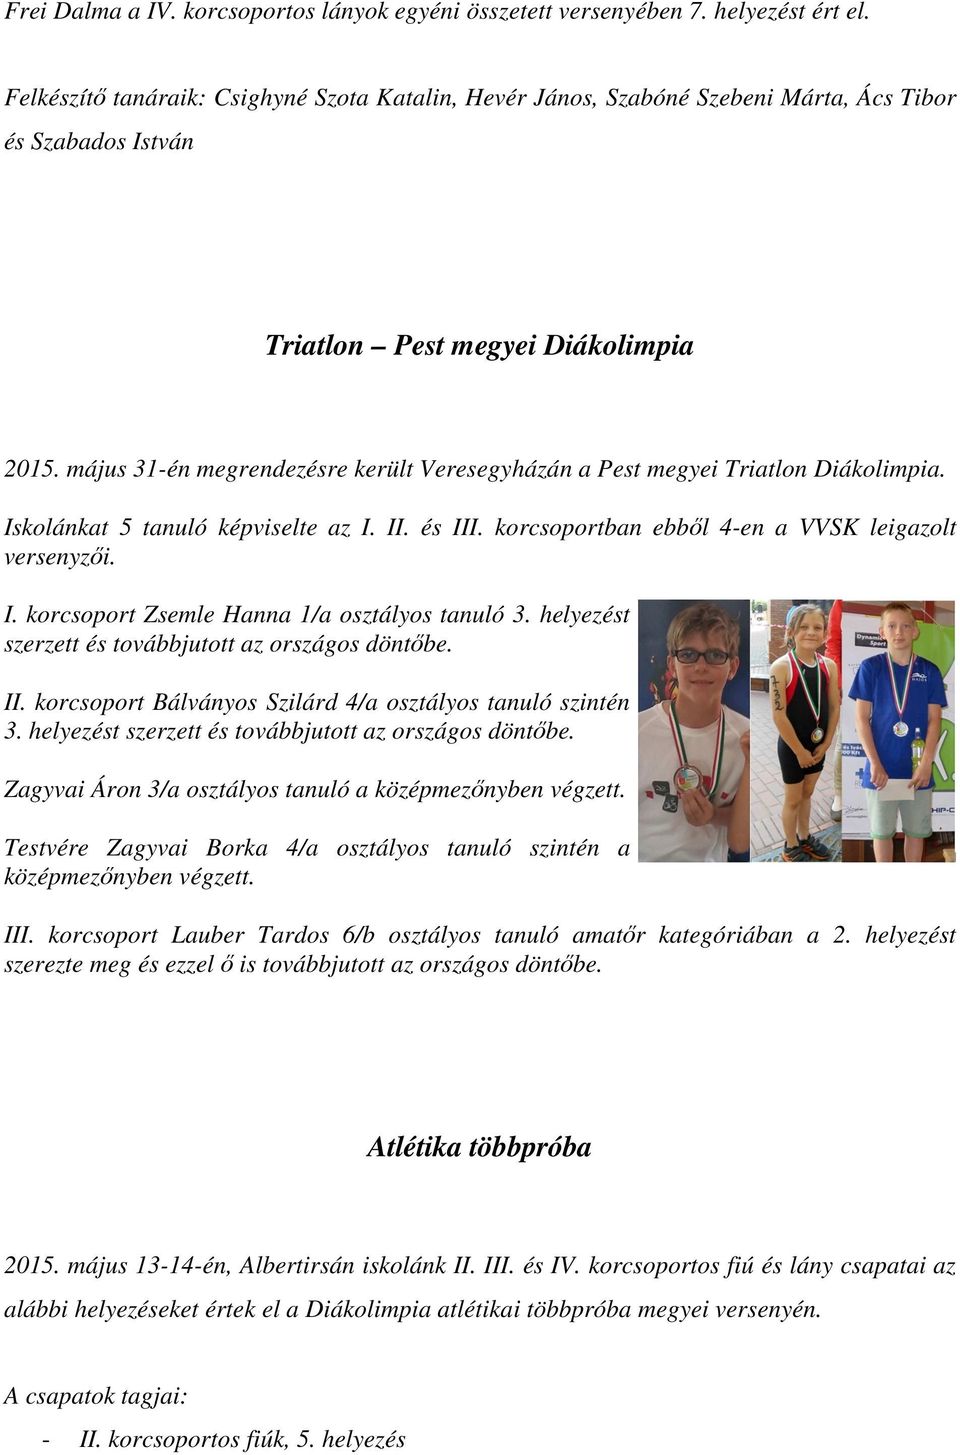 május 31-én megrendezésre került Veresegyházán a Pest megyei Triatlon Diákolimpia. Iskolánkat 5 tanuló képviselte az I. II. és III. korcsoportban ebből 4-en a VVSK leigazolt versenyzői. I. korcsoport Zsemle Hanna 1/a osztályos tanuló 3.